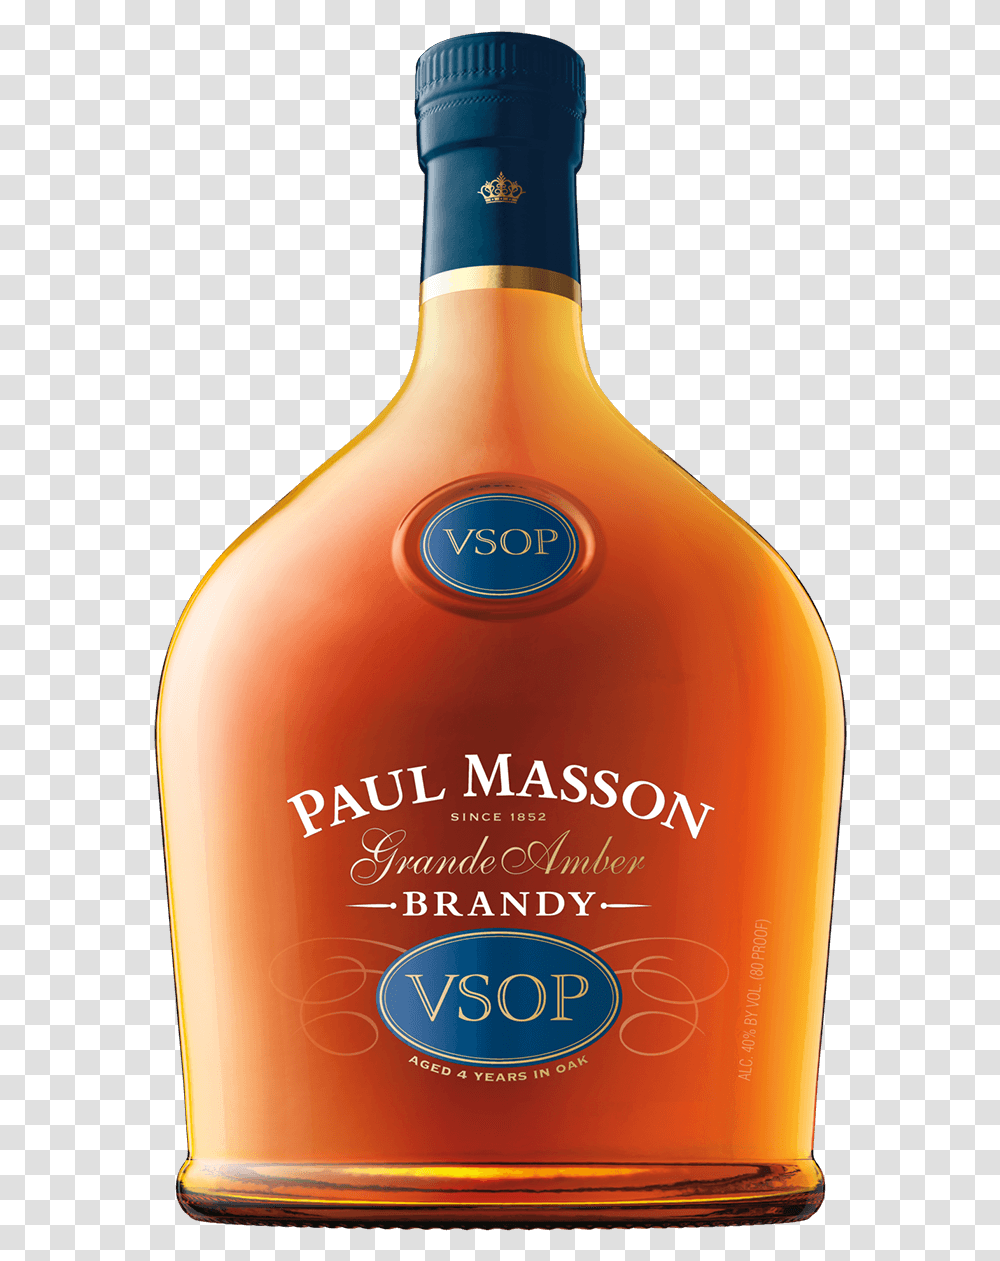 Paul Mason Vsop Paul Masson Brandy, Liquor, Alcohol, Beverage, Drink Transparent Png